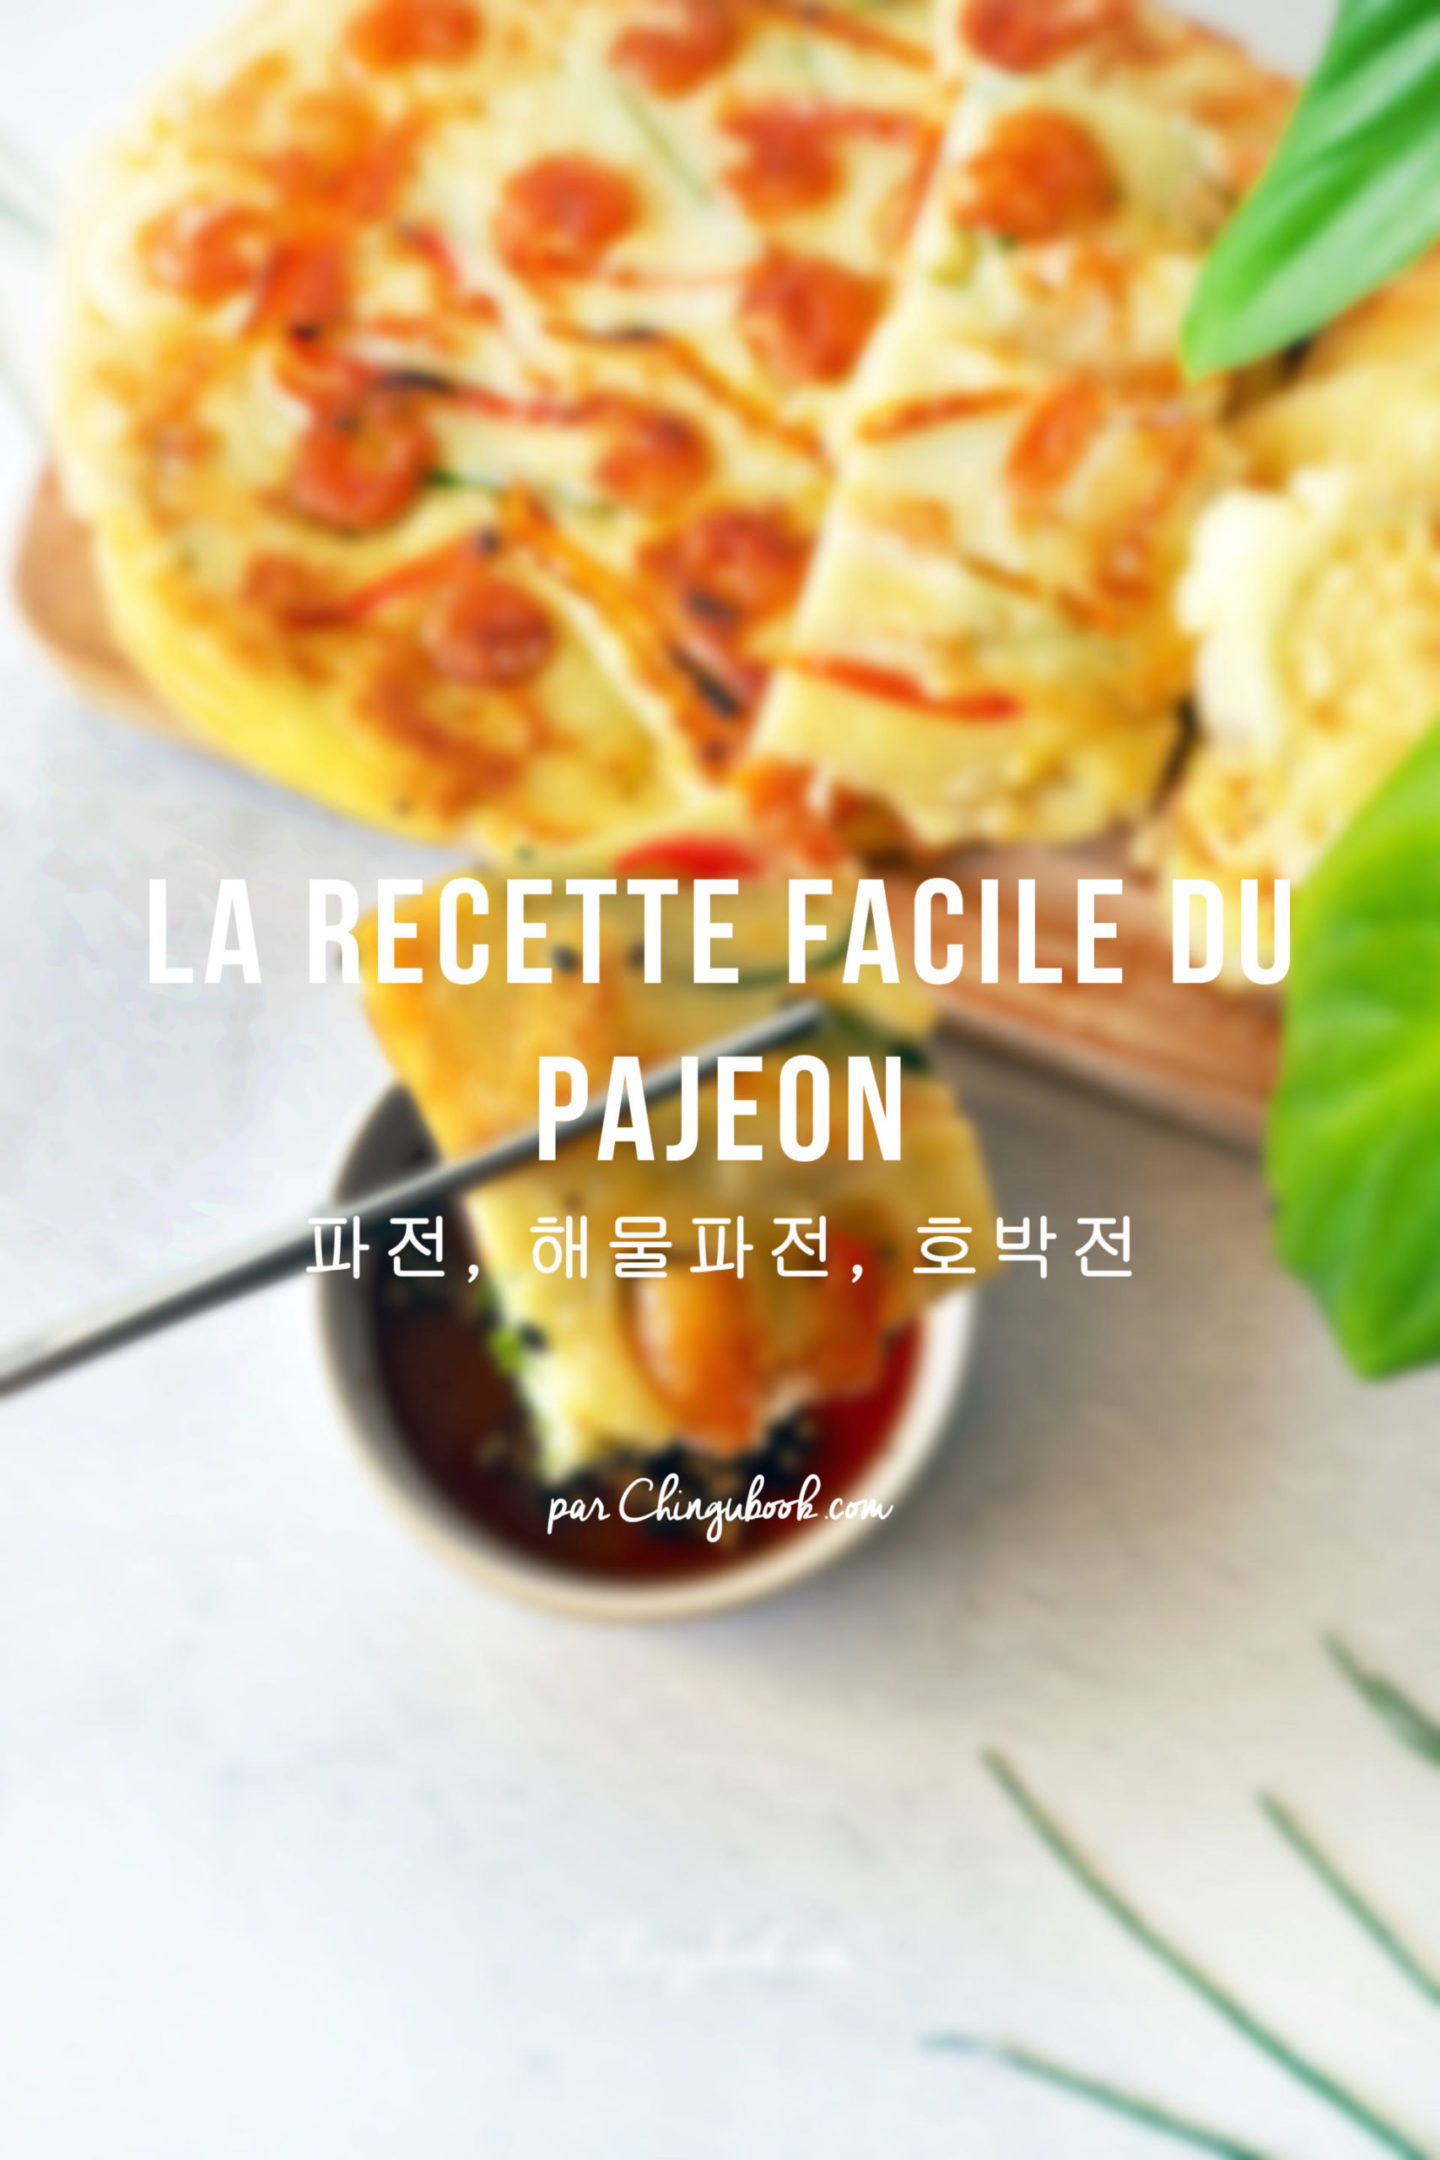 La recette facile du pajeon par Chingubook